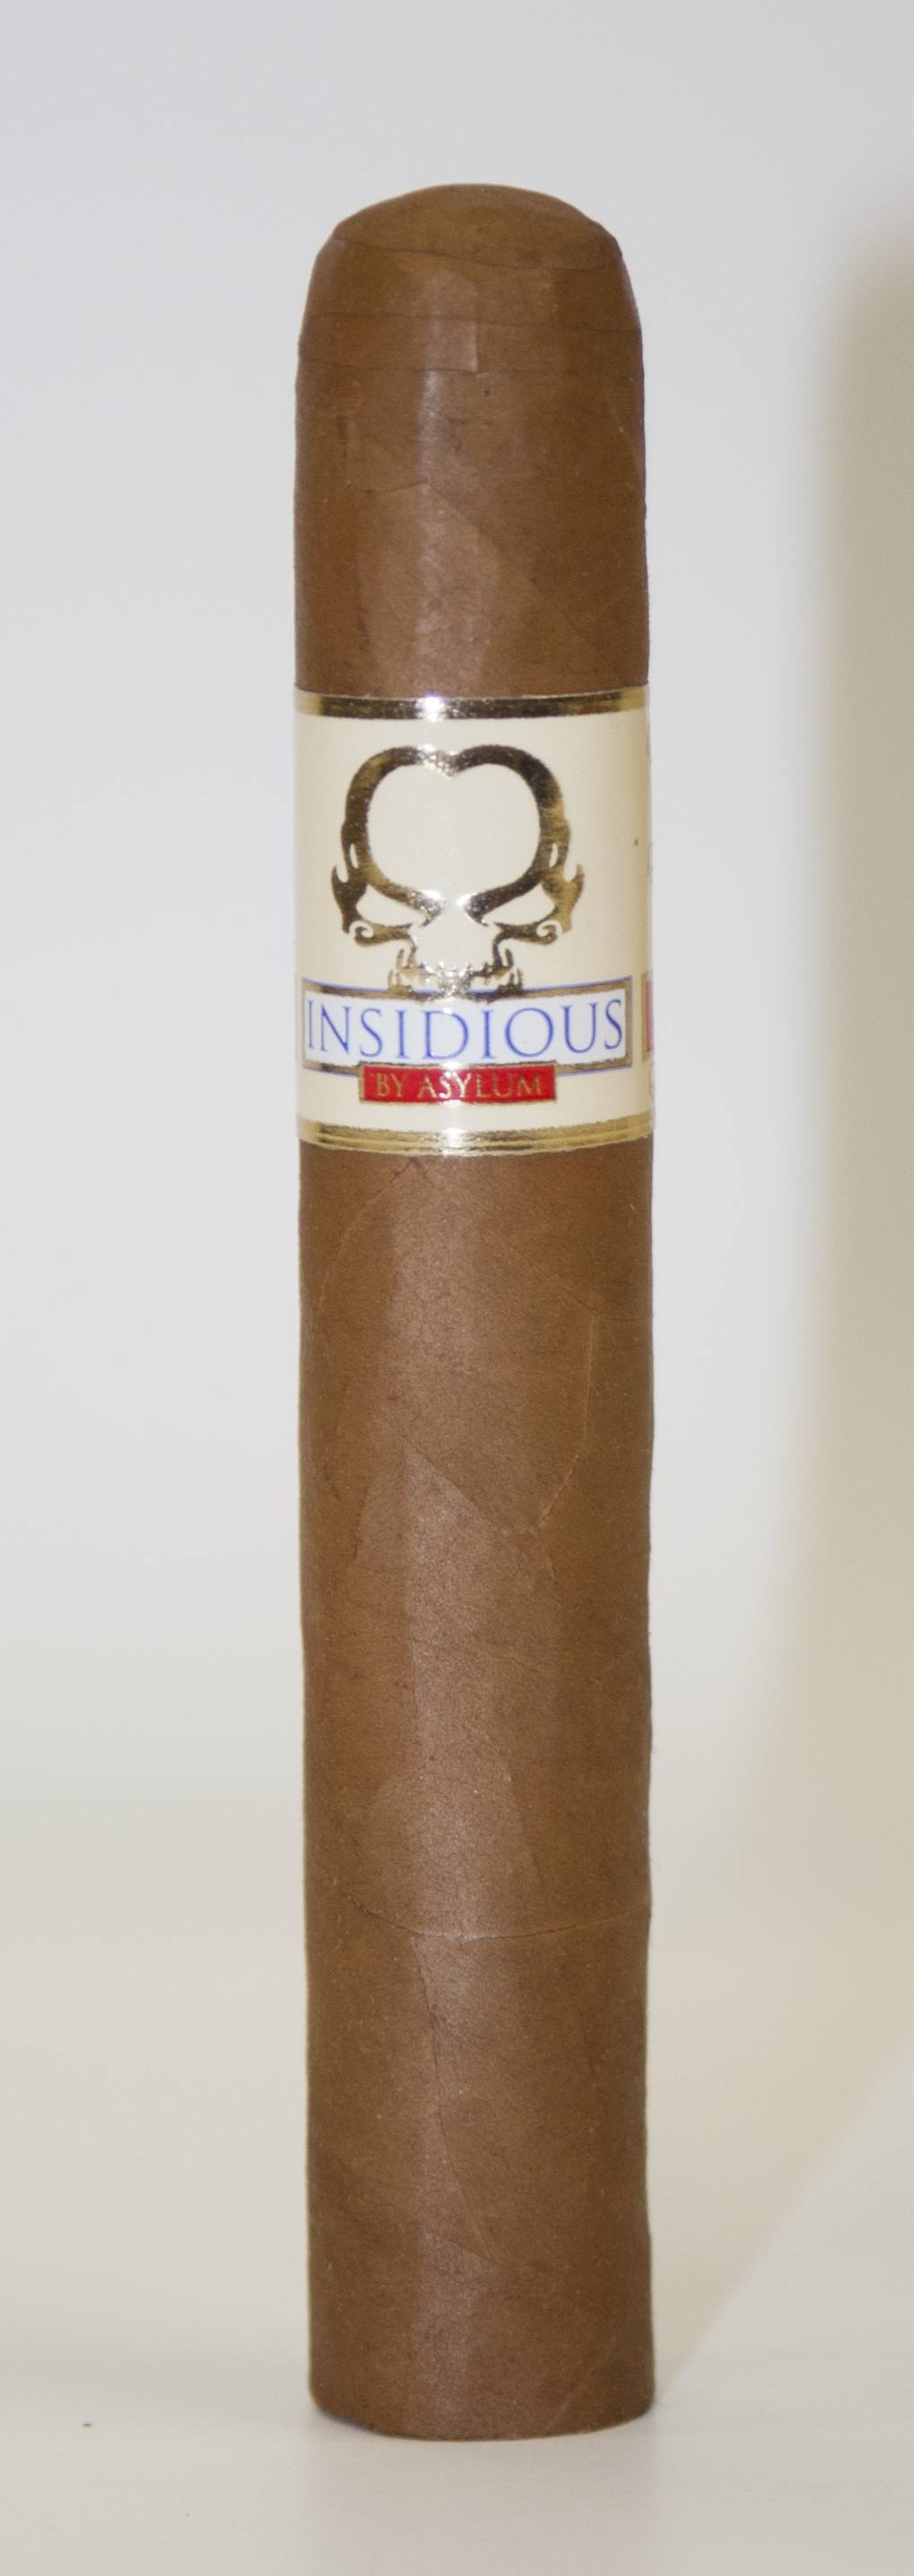 Insidious by Asylum single cigar